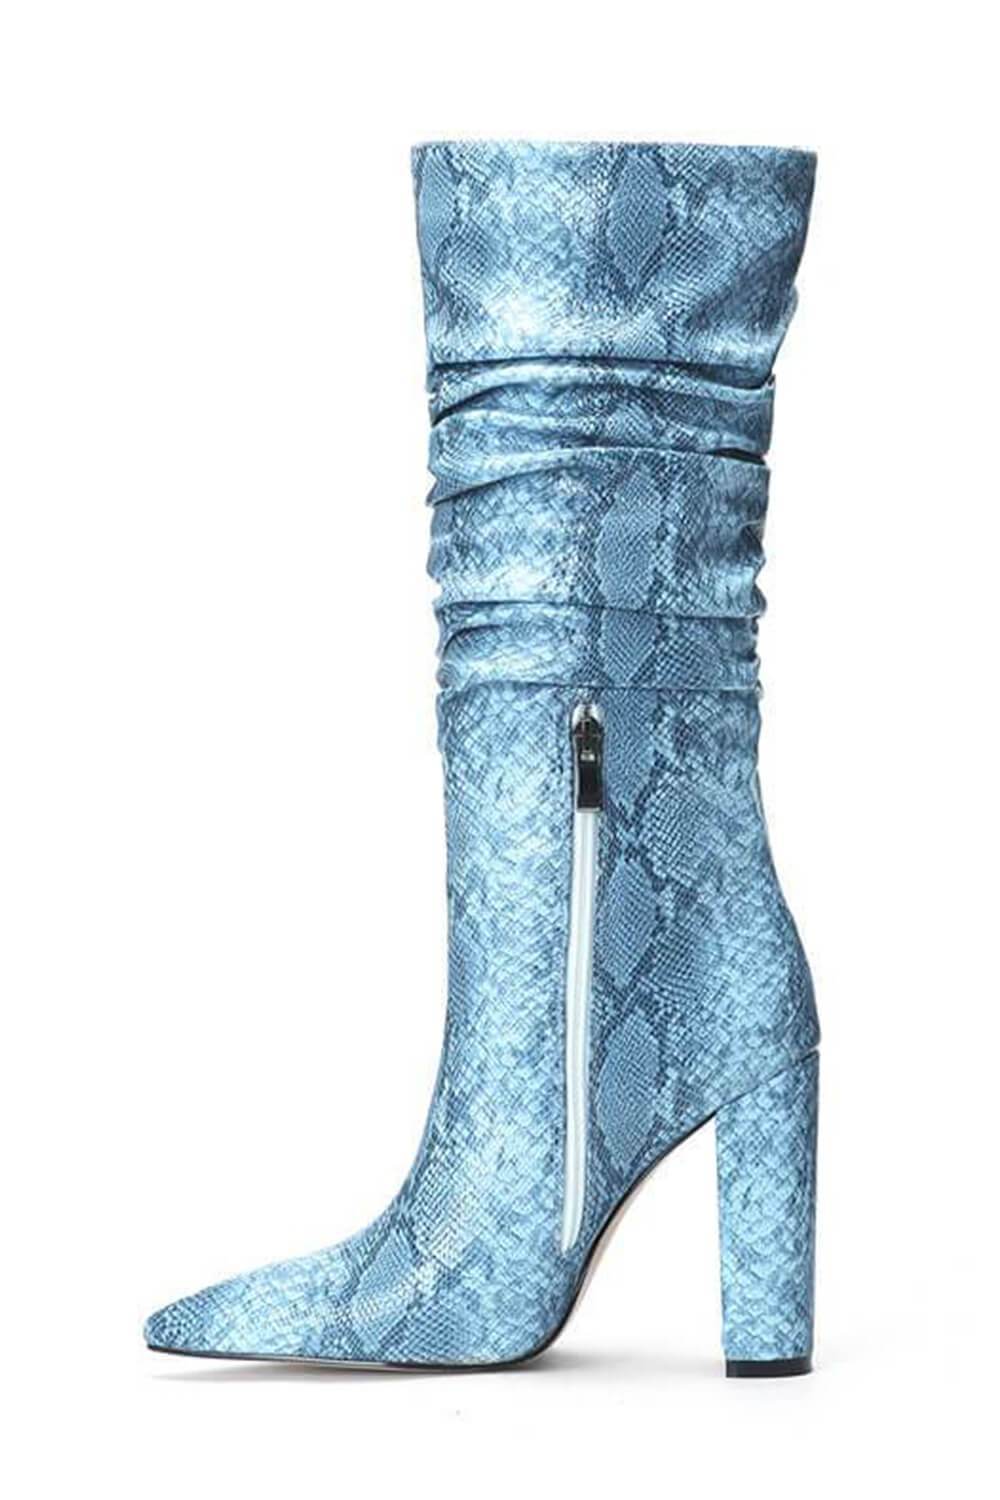 light blue knee high boots